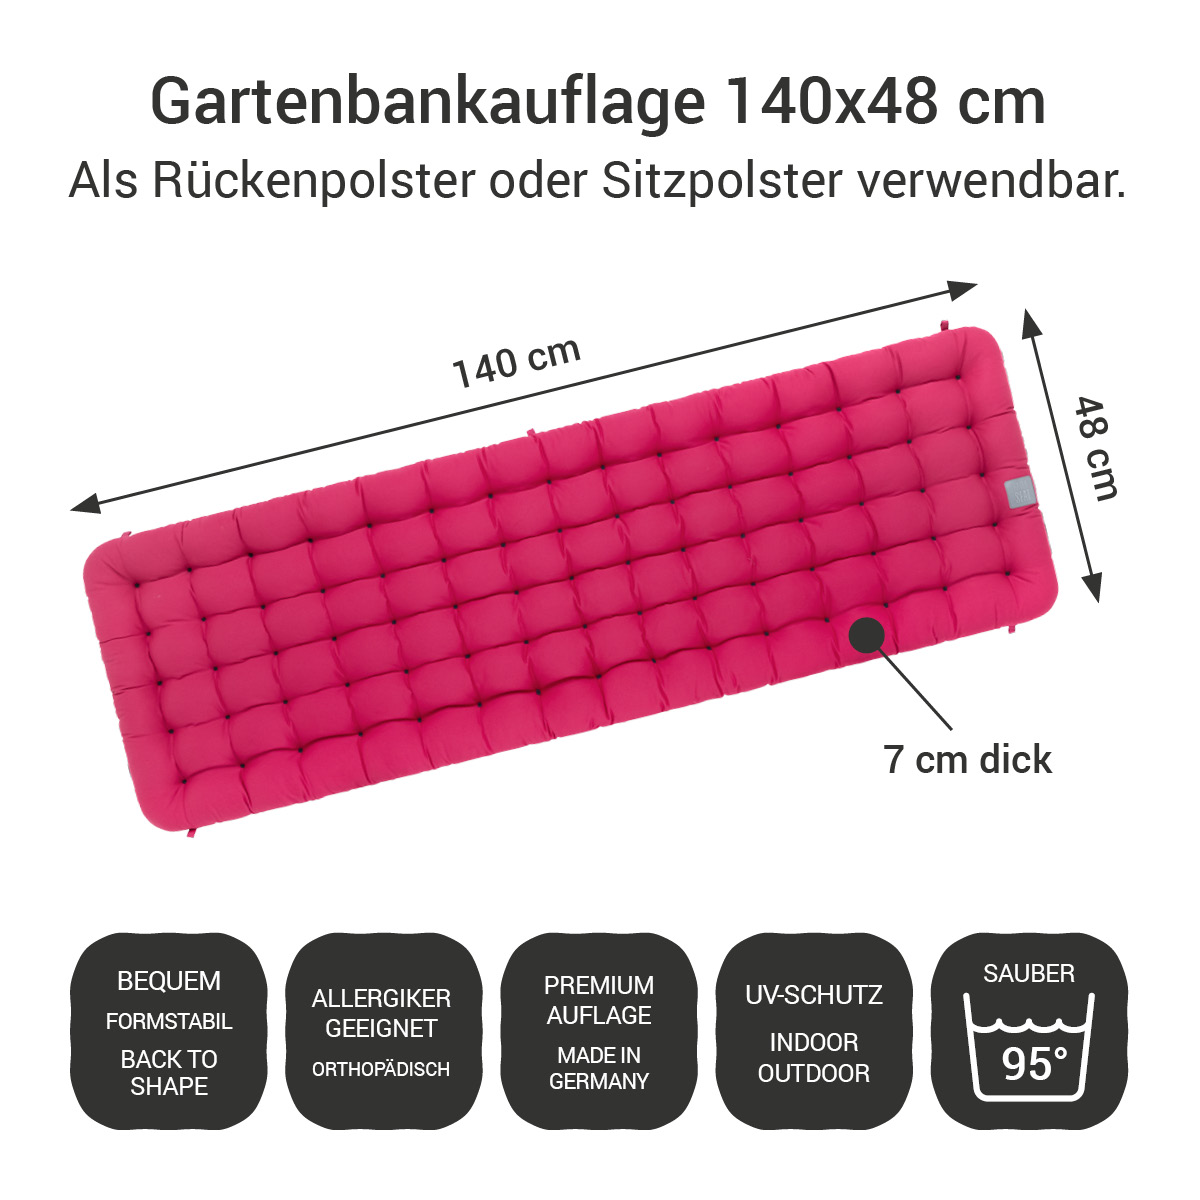 Gartenbankauflage hot pink | 140x48 cm / 140 x 50 cm | bequem & orthopädisch, komplett im Ganzen waschbar bis 95°C, wetterfest, Made in Germany